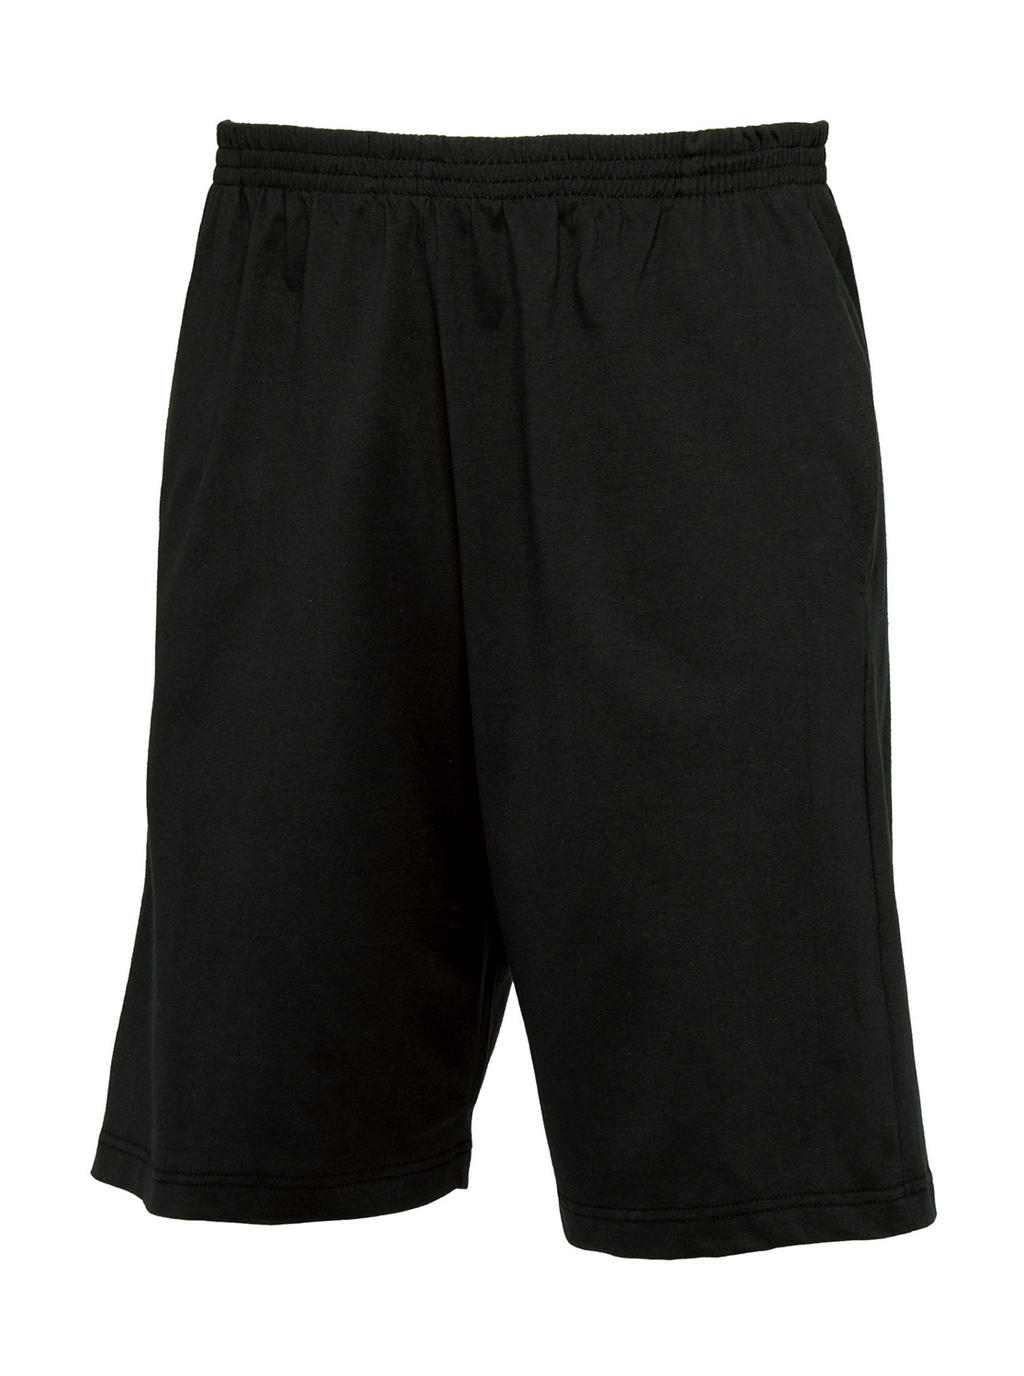  Shorts Move in Farbe Black